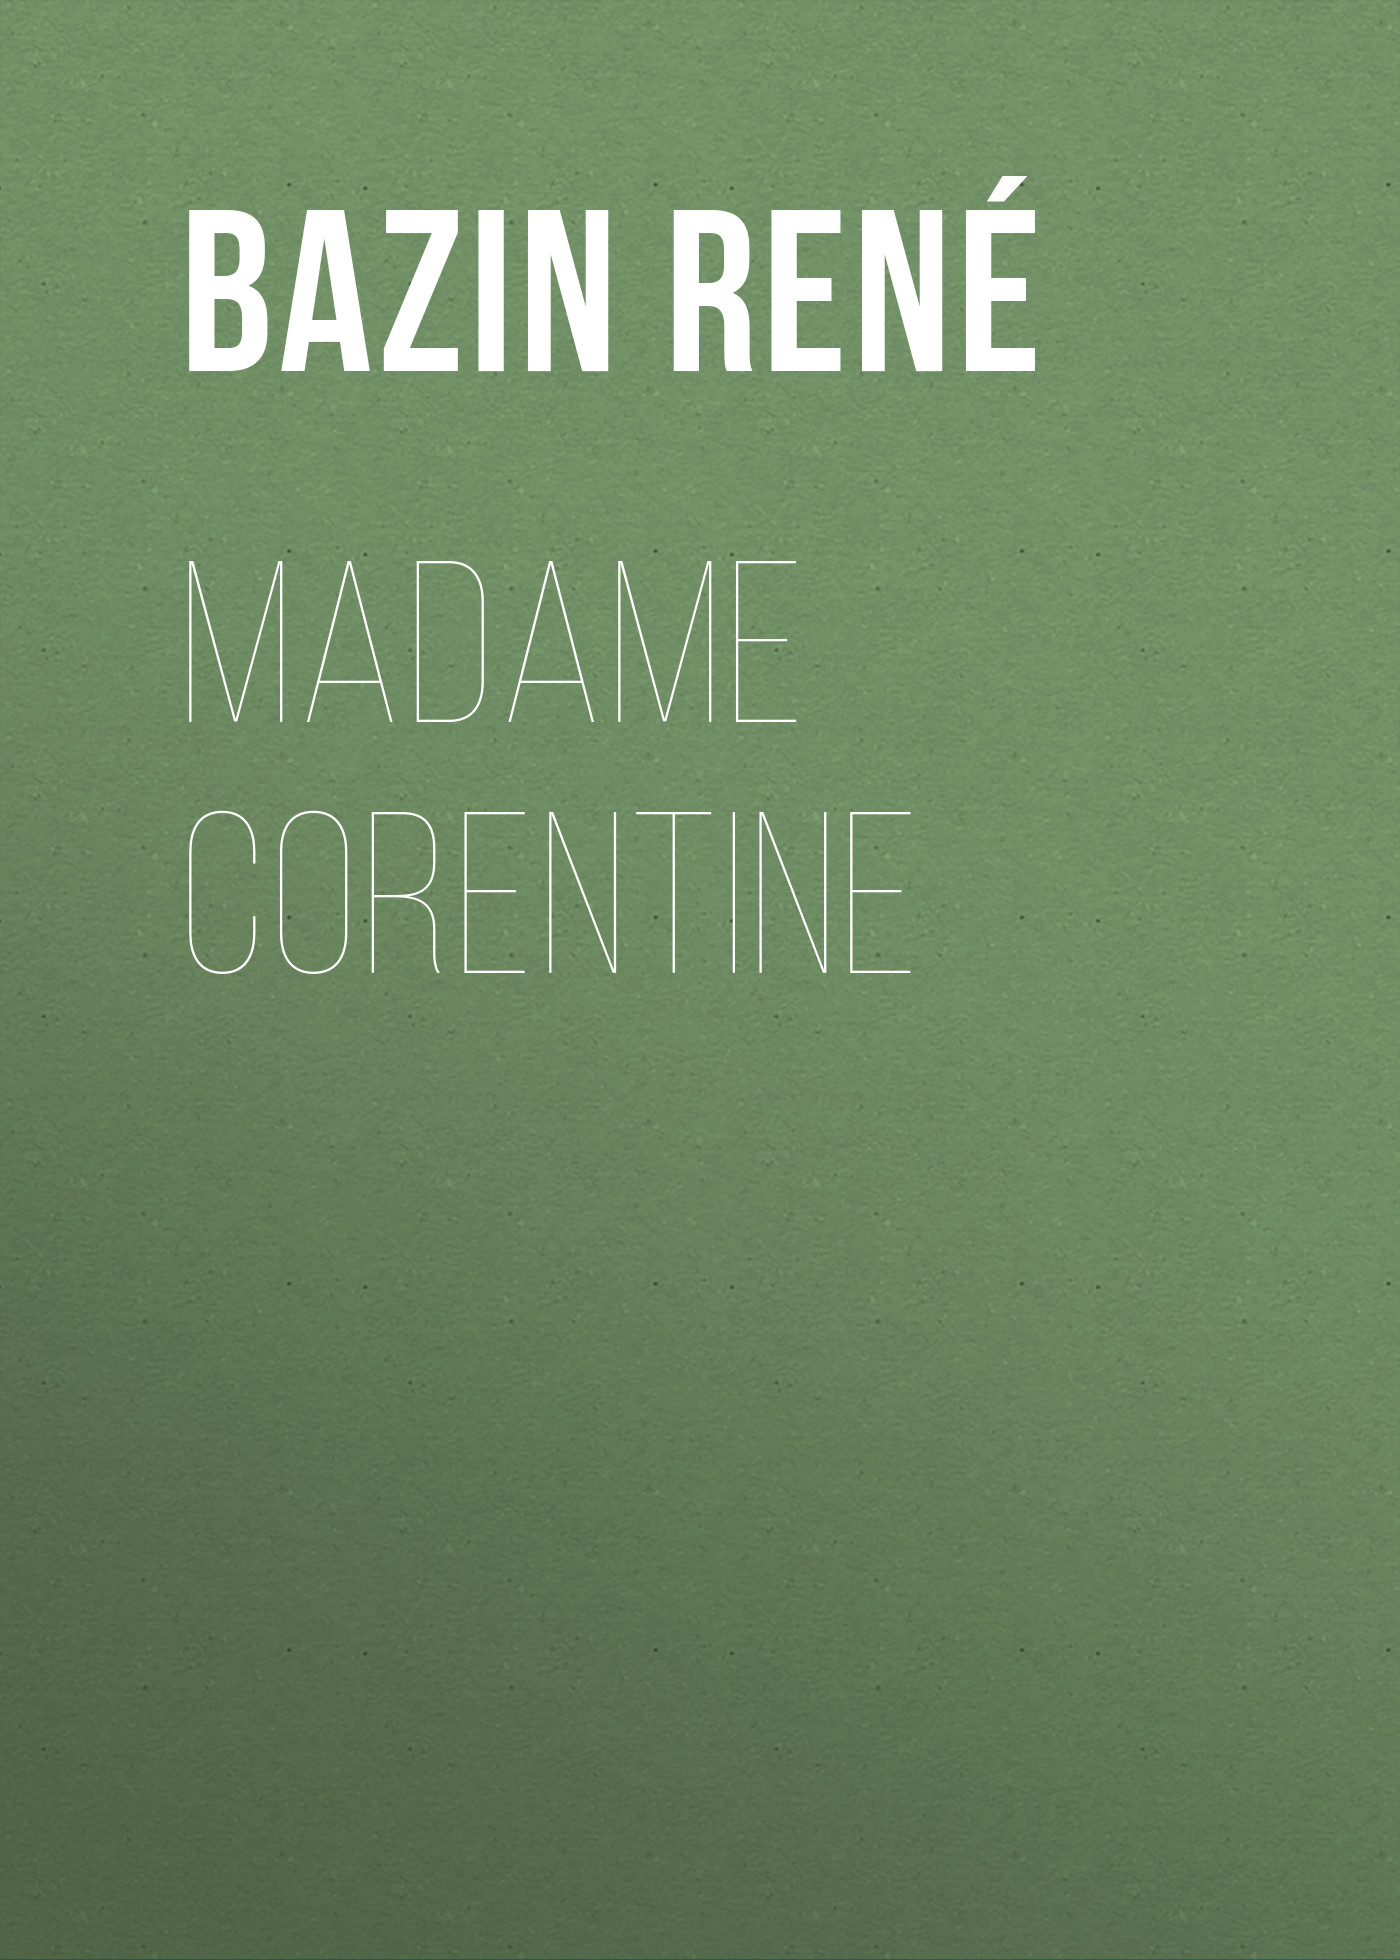 Книга Madame Corentine из серии , созданная René Bazin, может относится к жанру Иностранные языки, Зарубежная старинная литература, Зарубежная классика. Стоимость электронной книги Madame Corentine с идентификатором 24177692 составляет 0 руб.